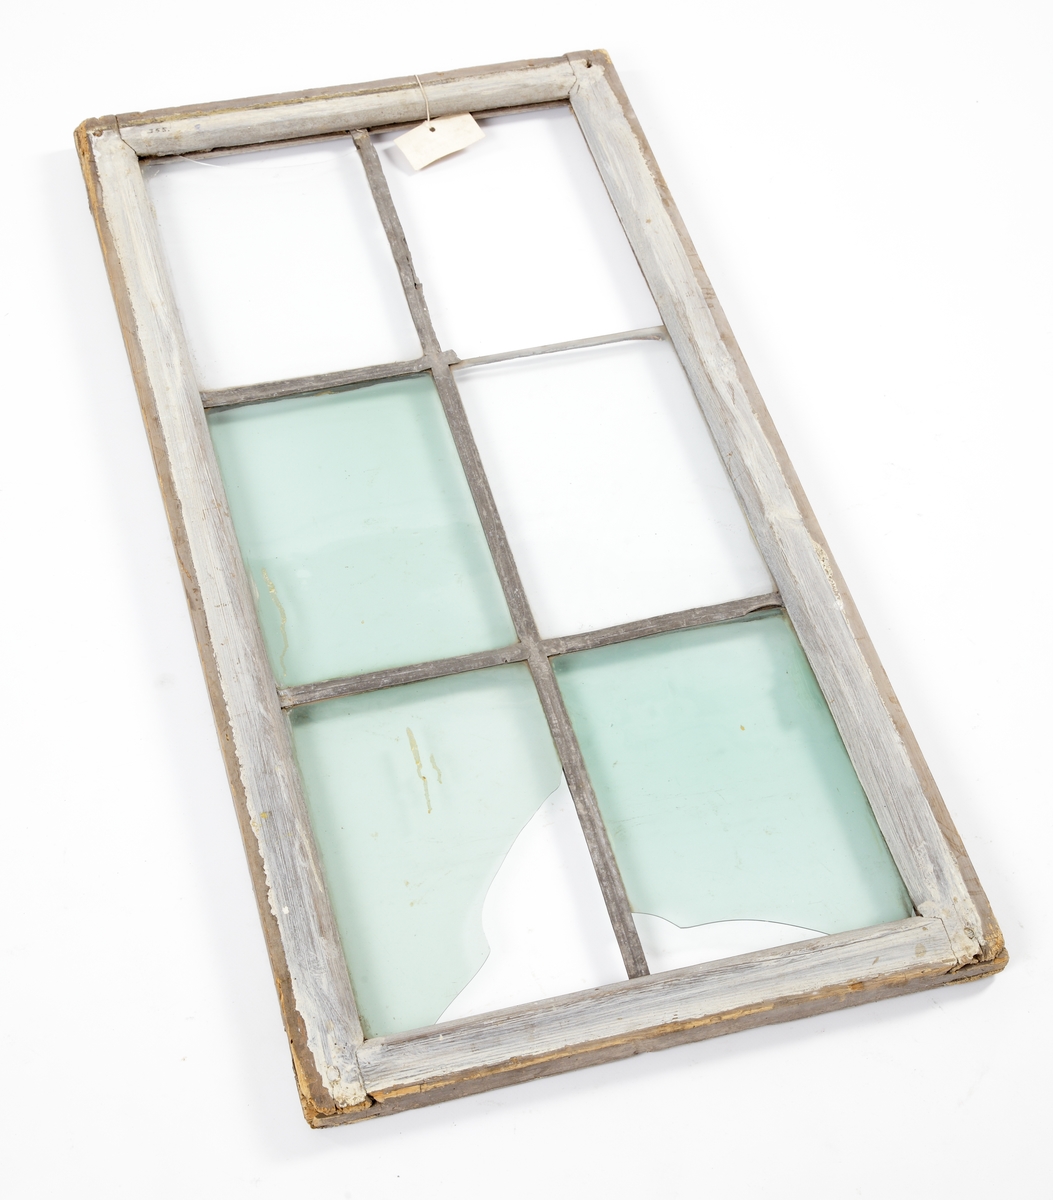 Fönsterram av trä, målad i vitt/ljusblått. Blyspröjsar. Sex glasrutor med grönt glas i olika nyanser.